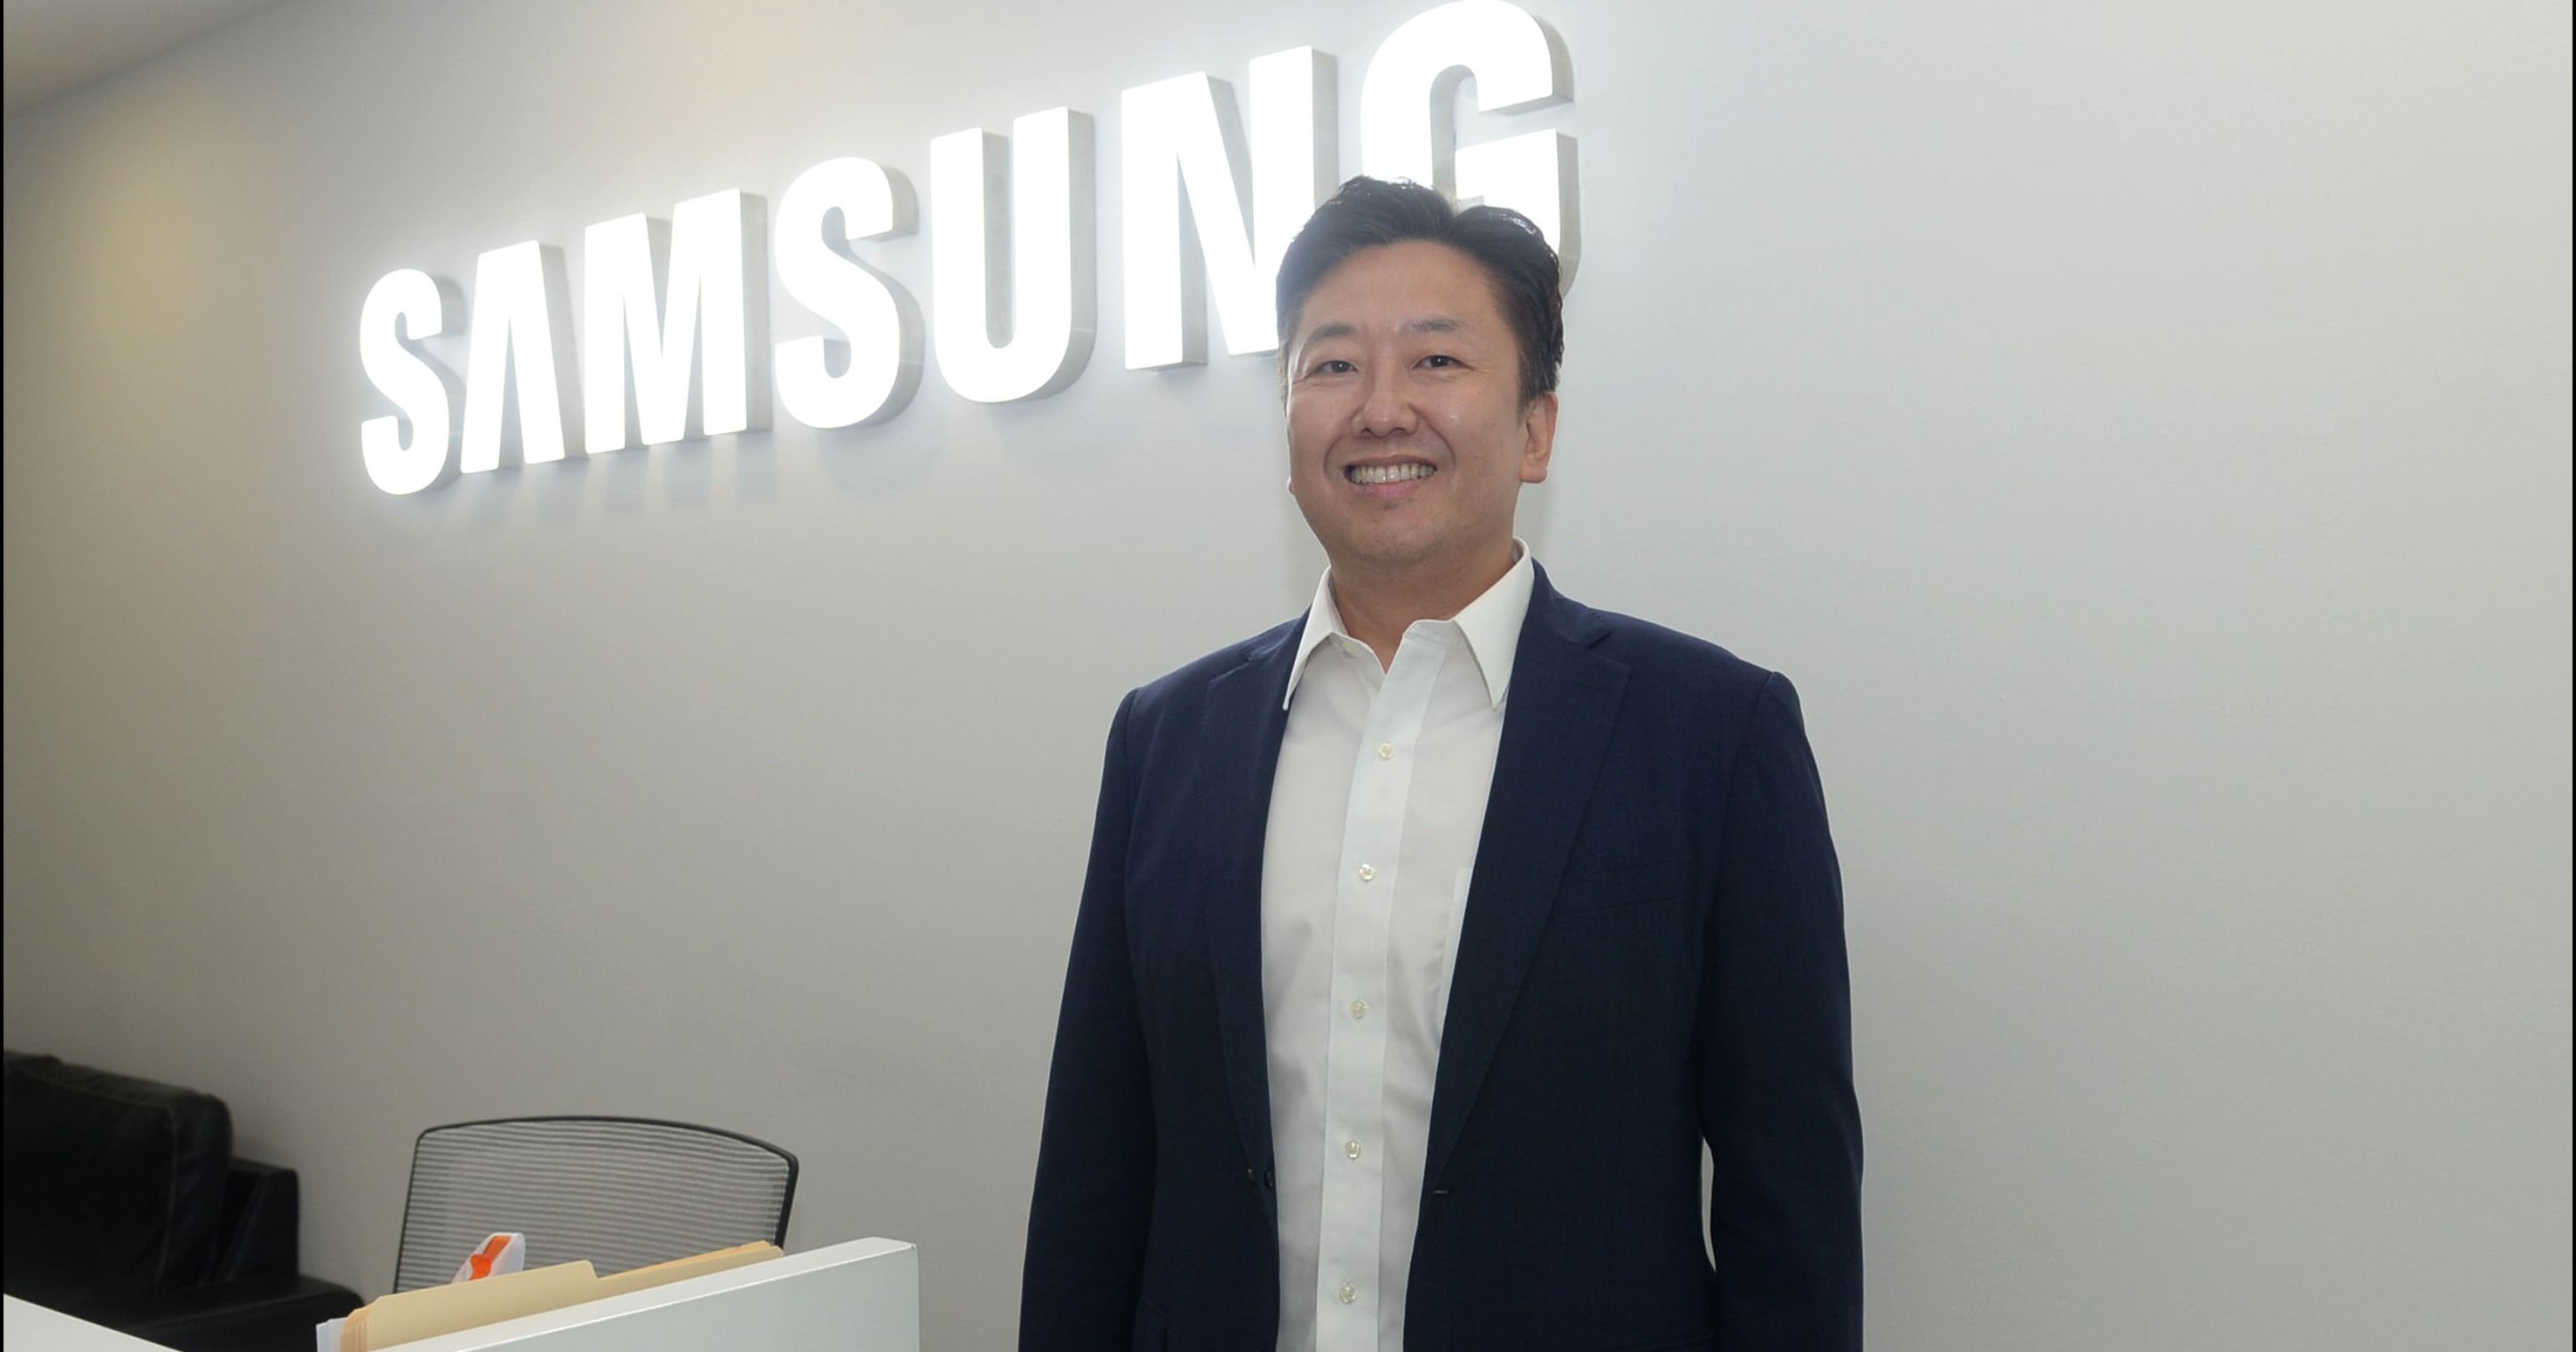 En Samsung Electronics tenemos una apuesta sólida y decidida en términos de desarrollo sostenible